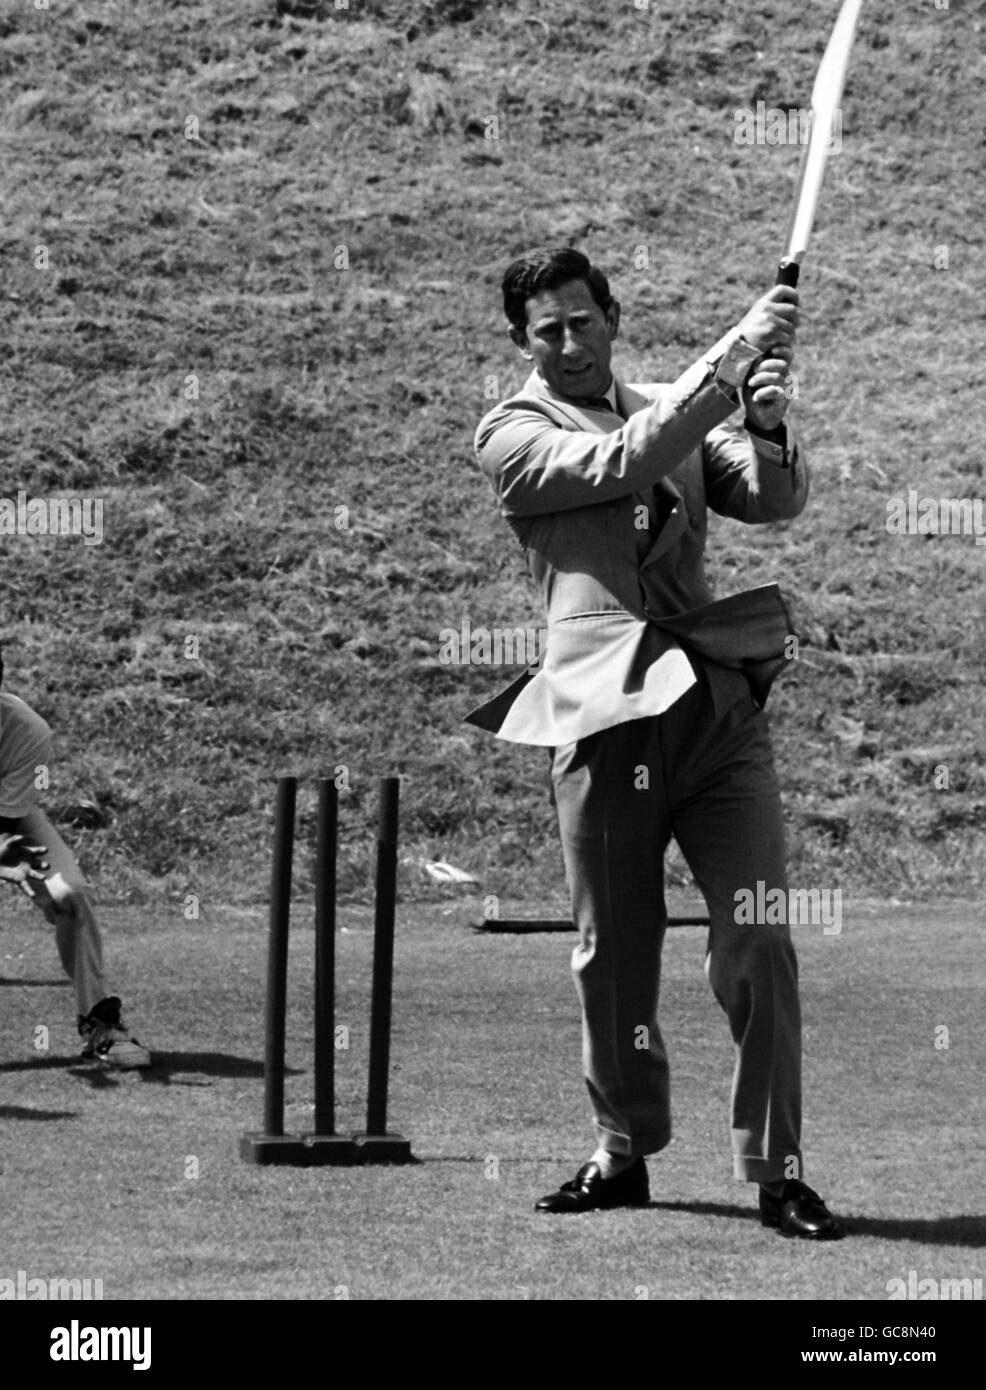 Le prince de galles joue au cricket lors d'une visite à La Fondation de cricket du château d'Arundel 2.8.91 Banque D'Images